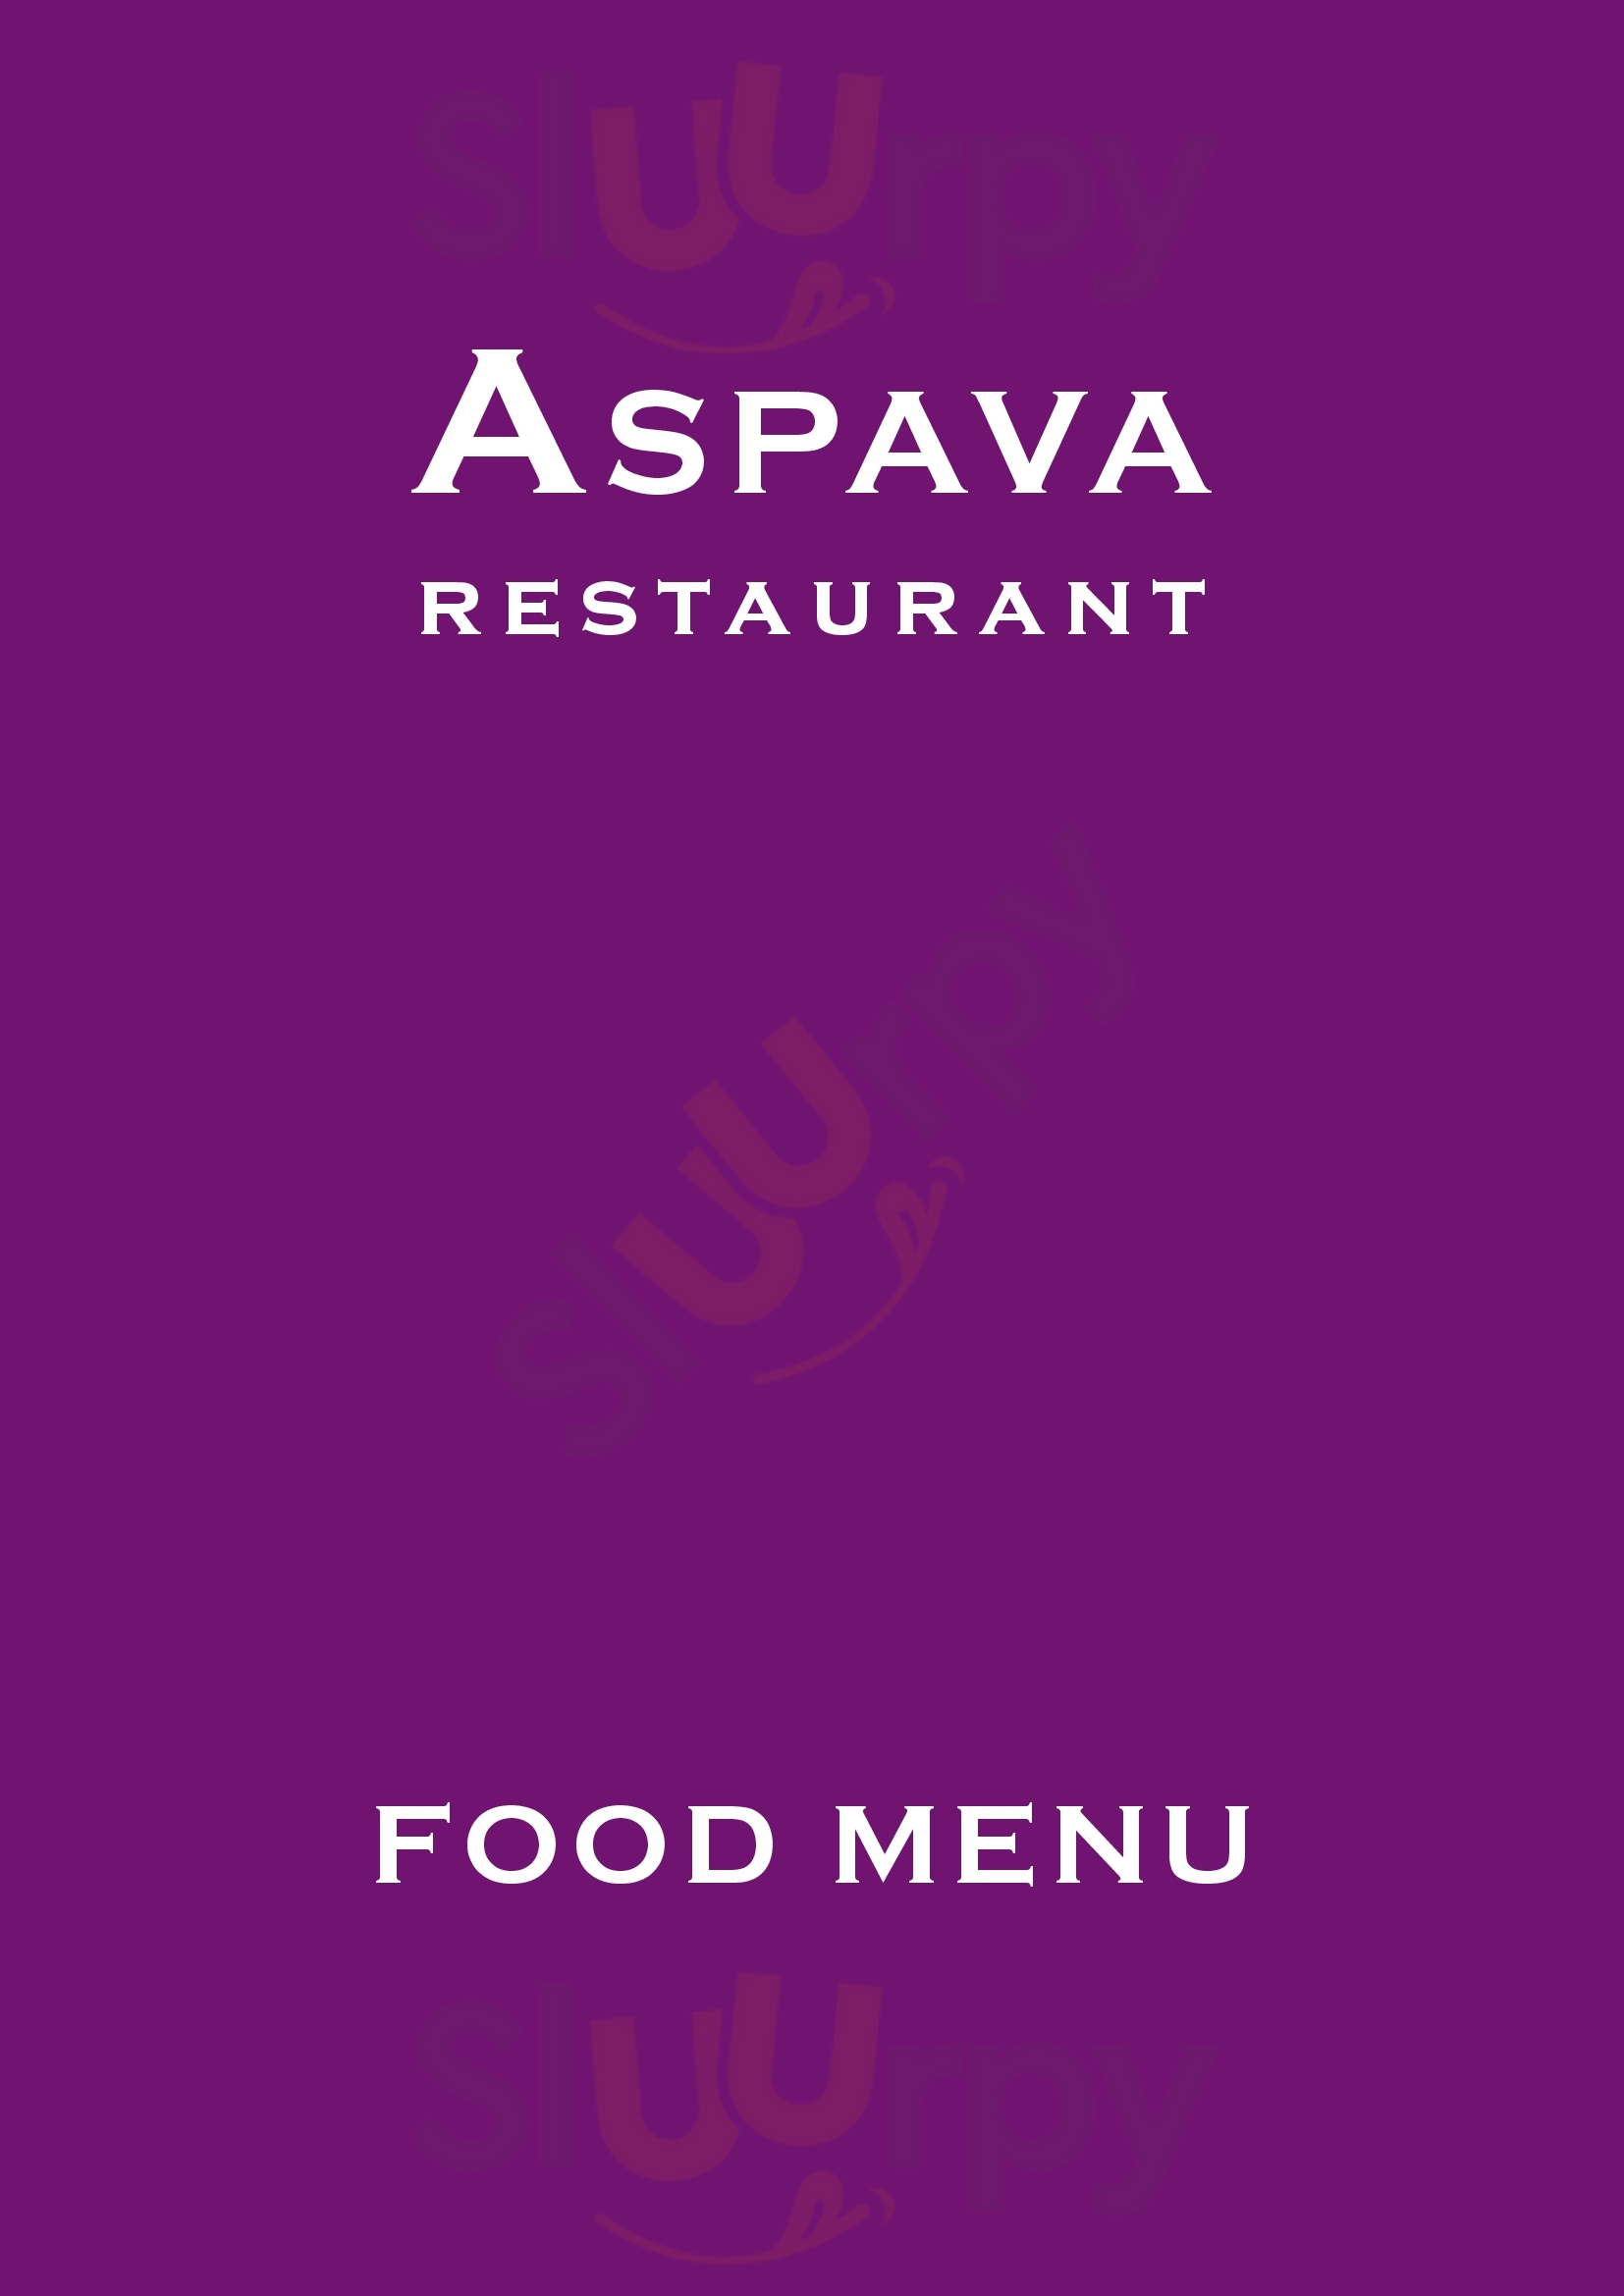 Aspava Restaurant Cockermouth Menu - 1